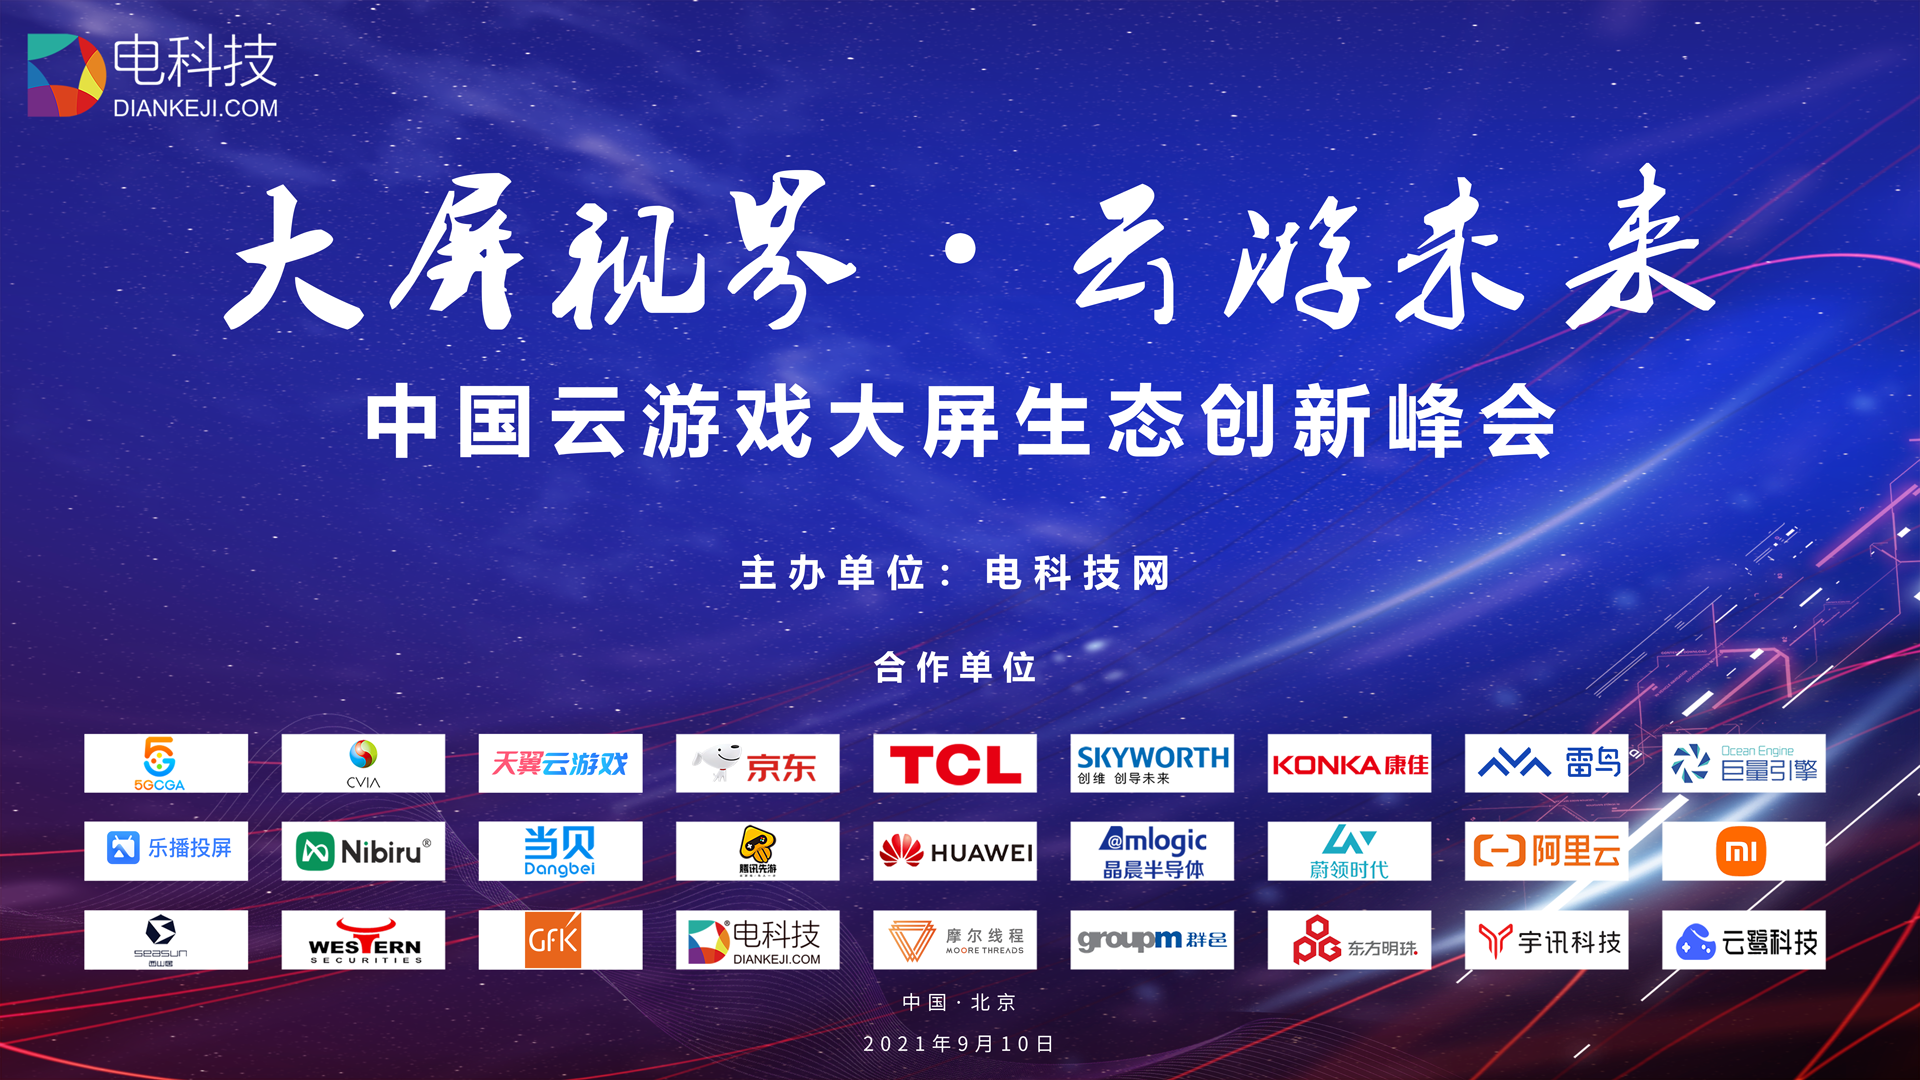 中国大屏云游戏峰会9月10日开幕，电科技邀您共同见证游戏大变革